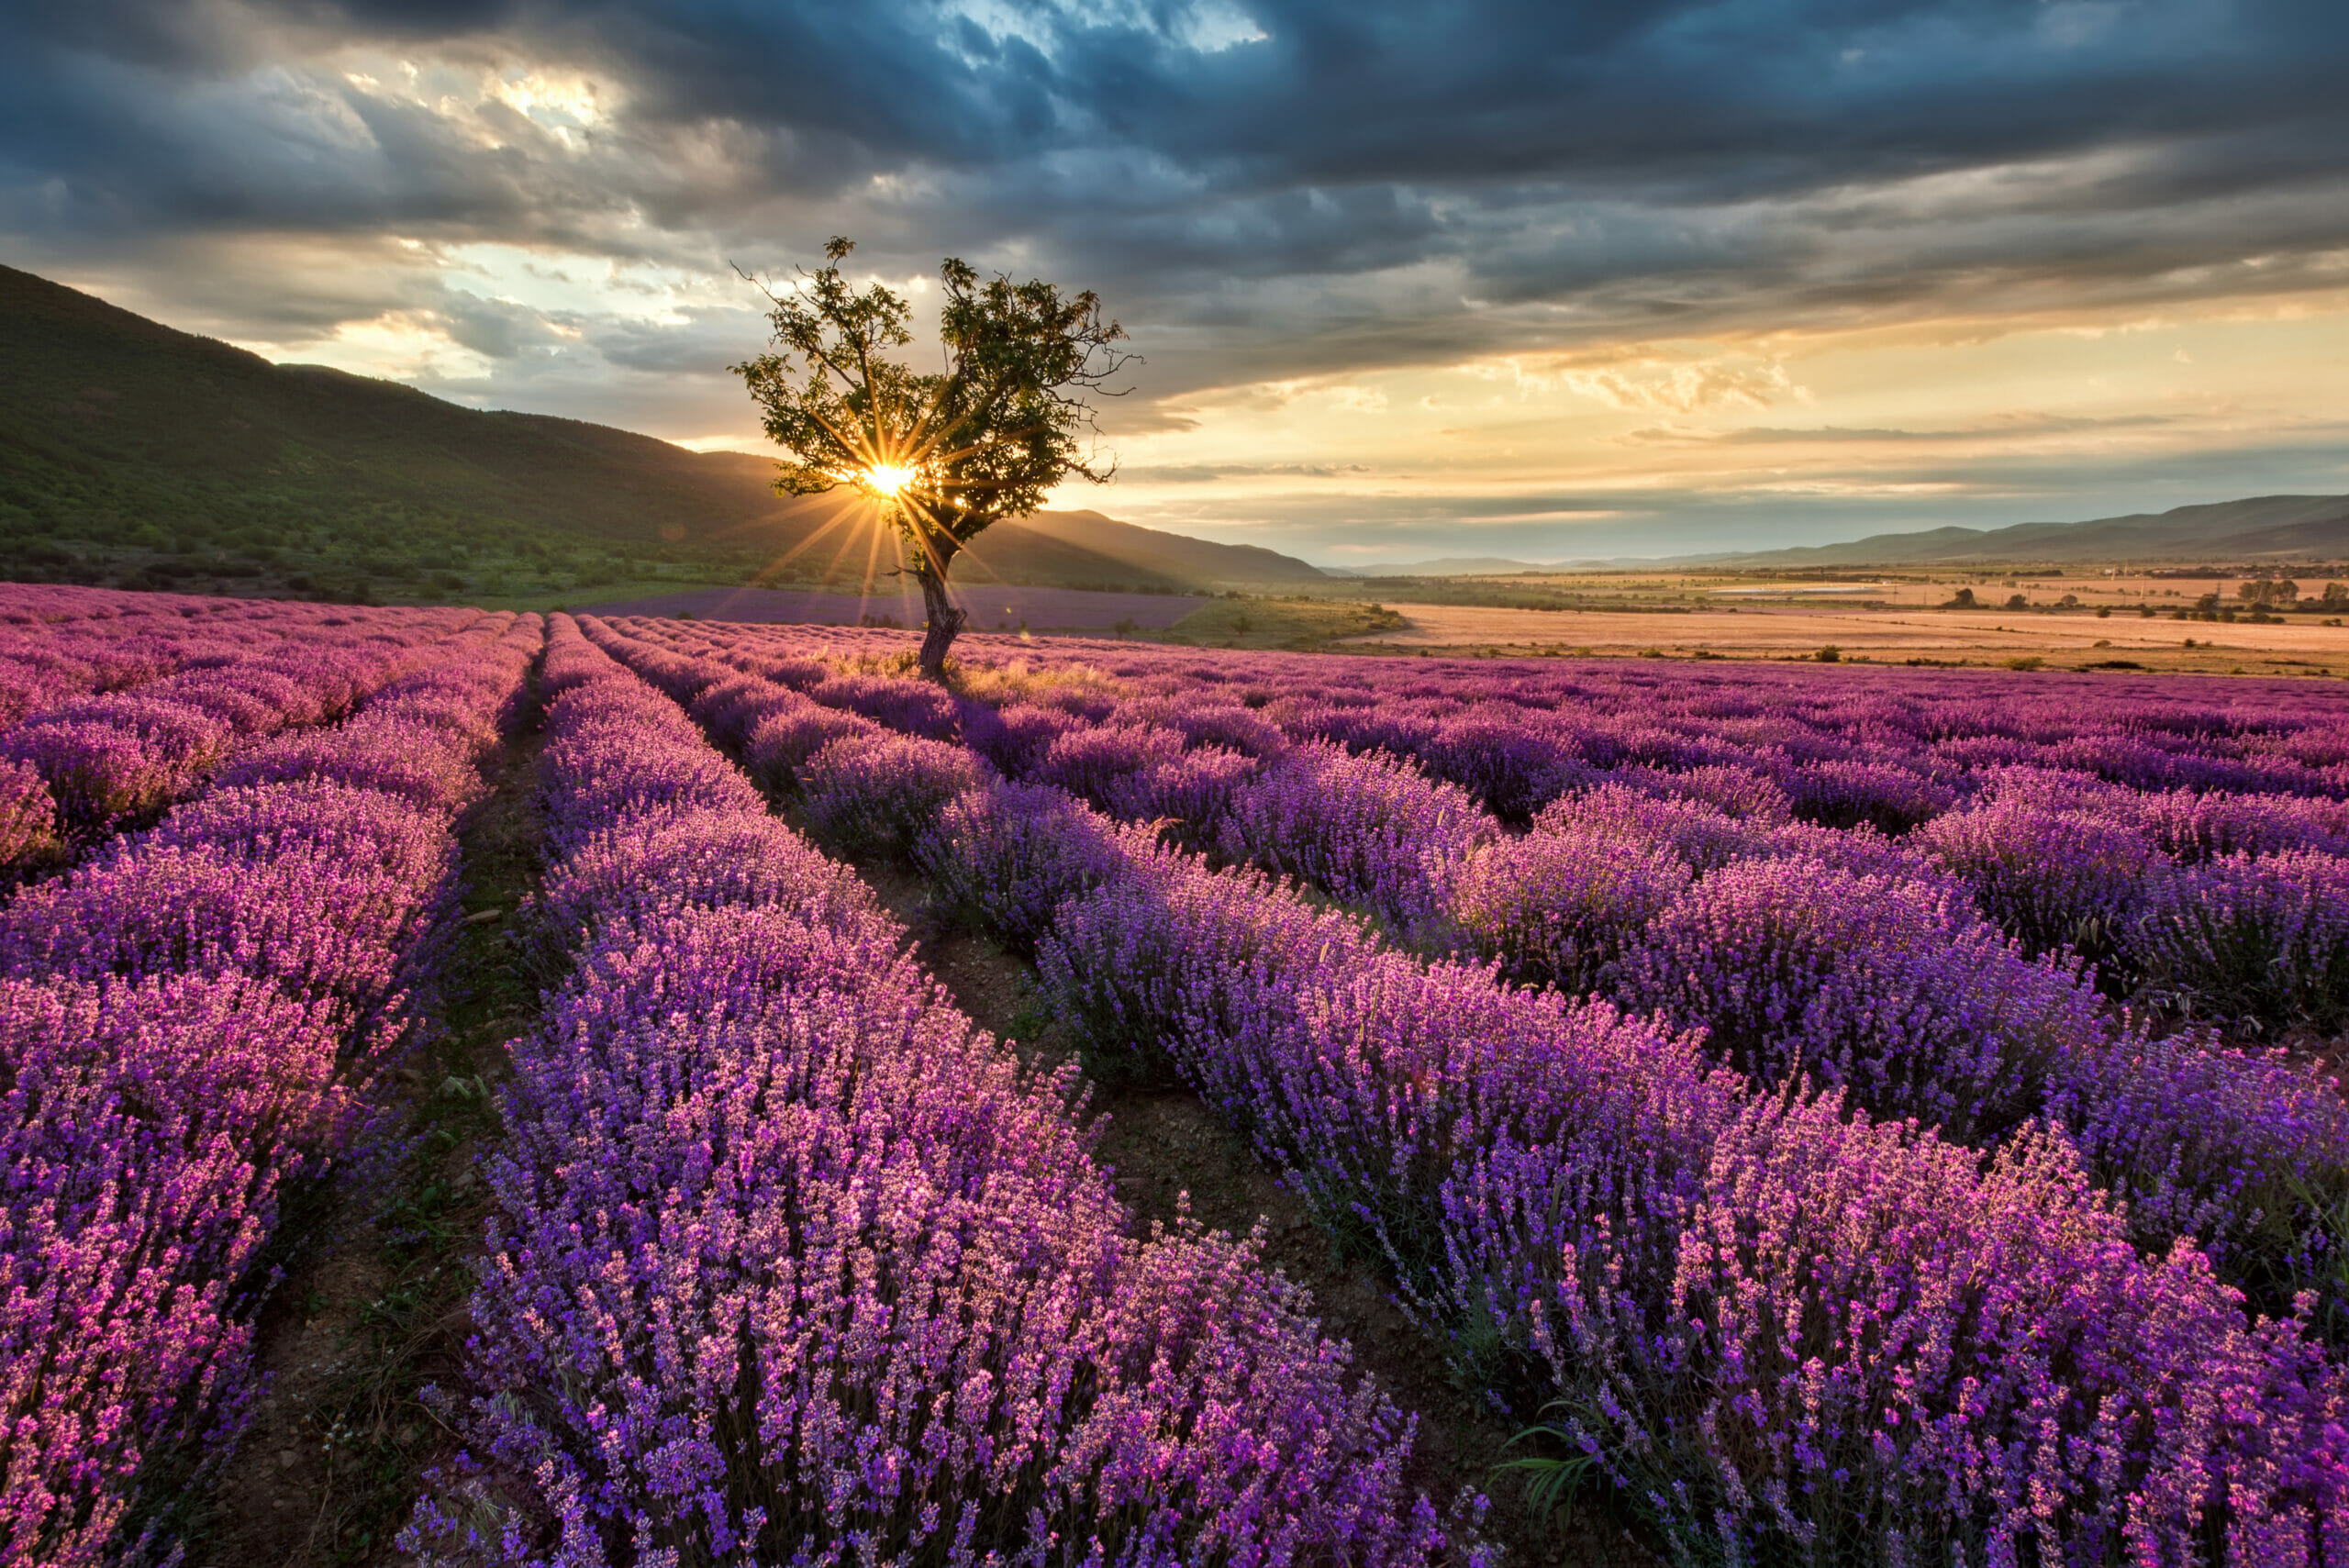 Saffron beds - Lavender field